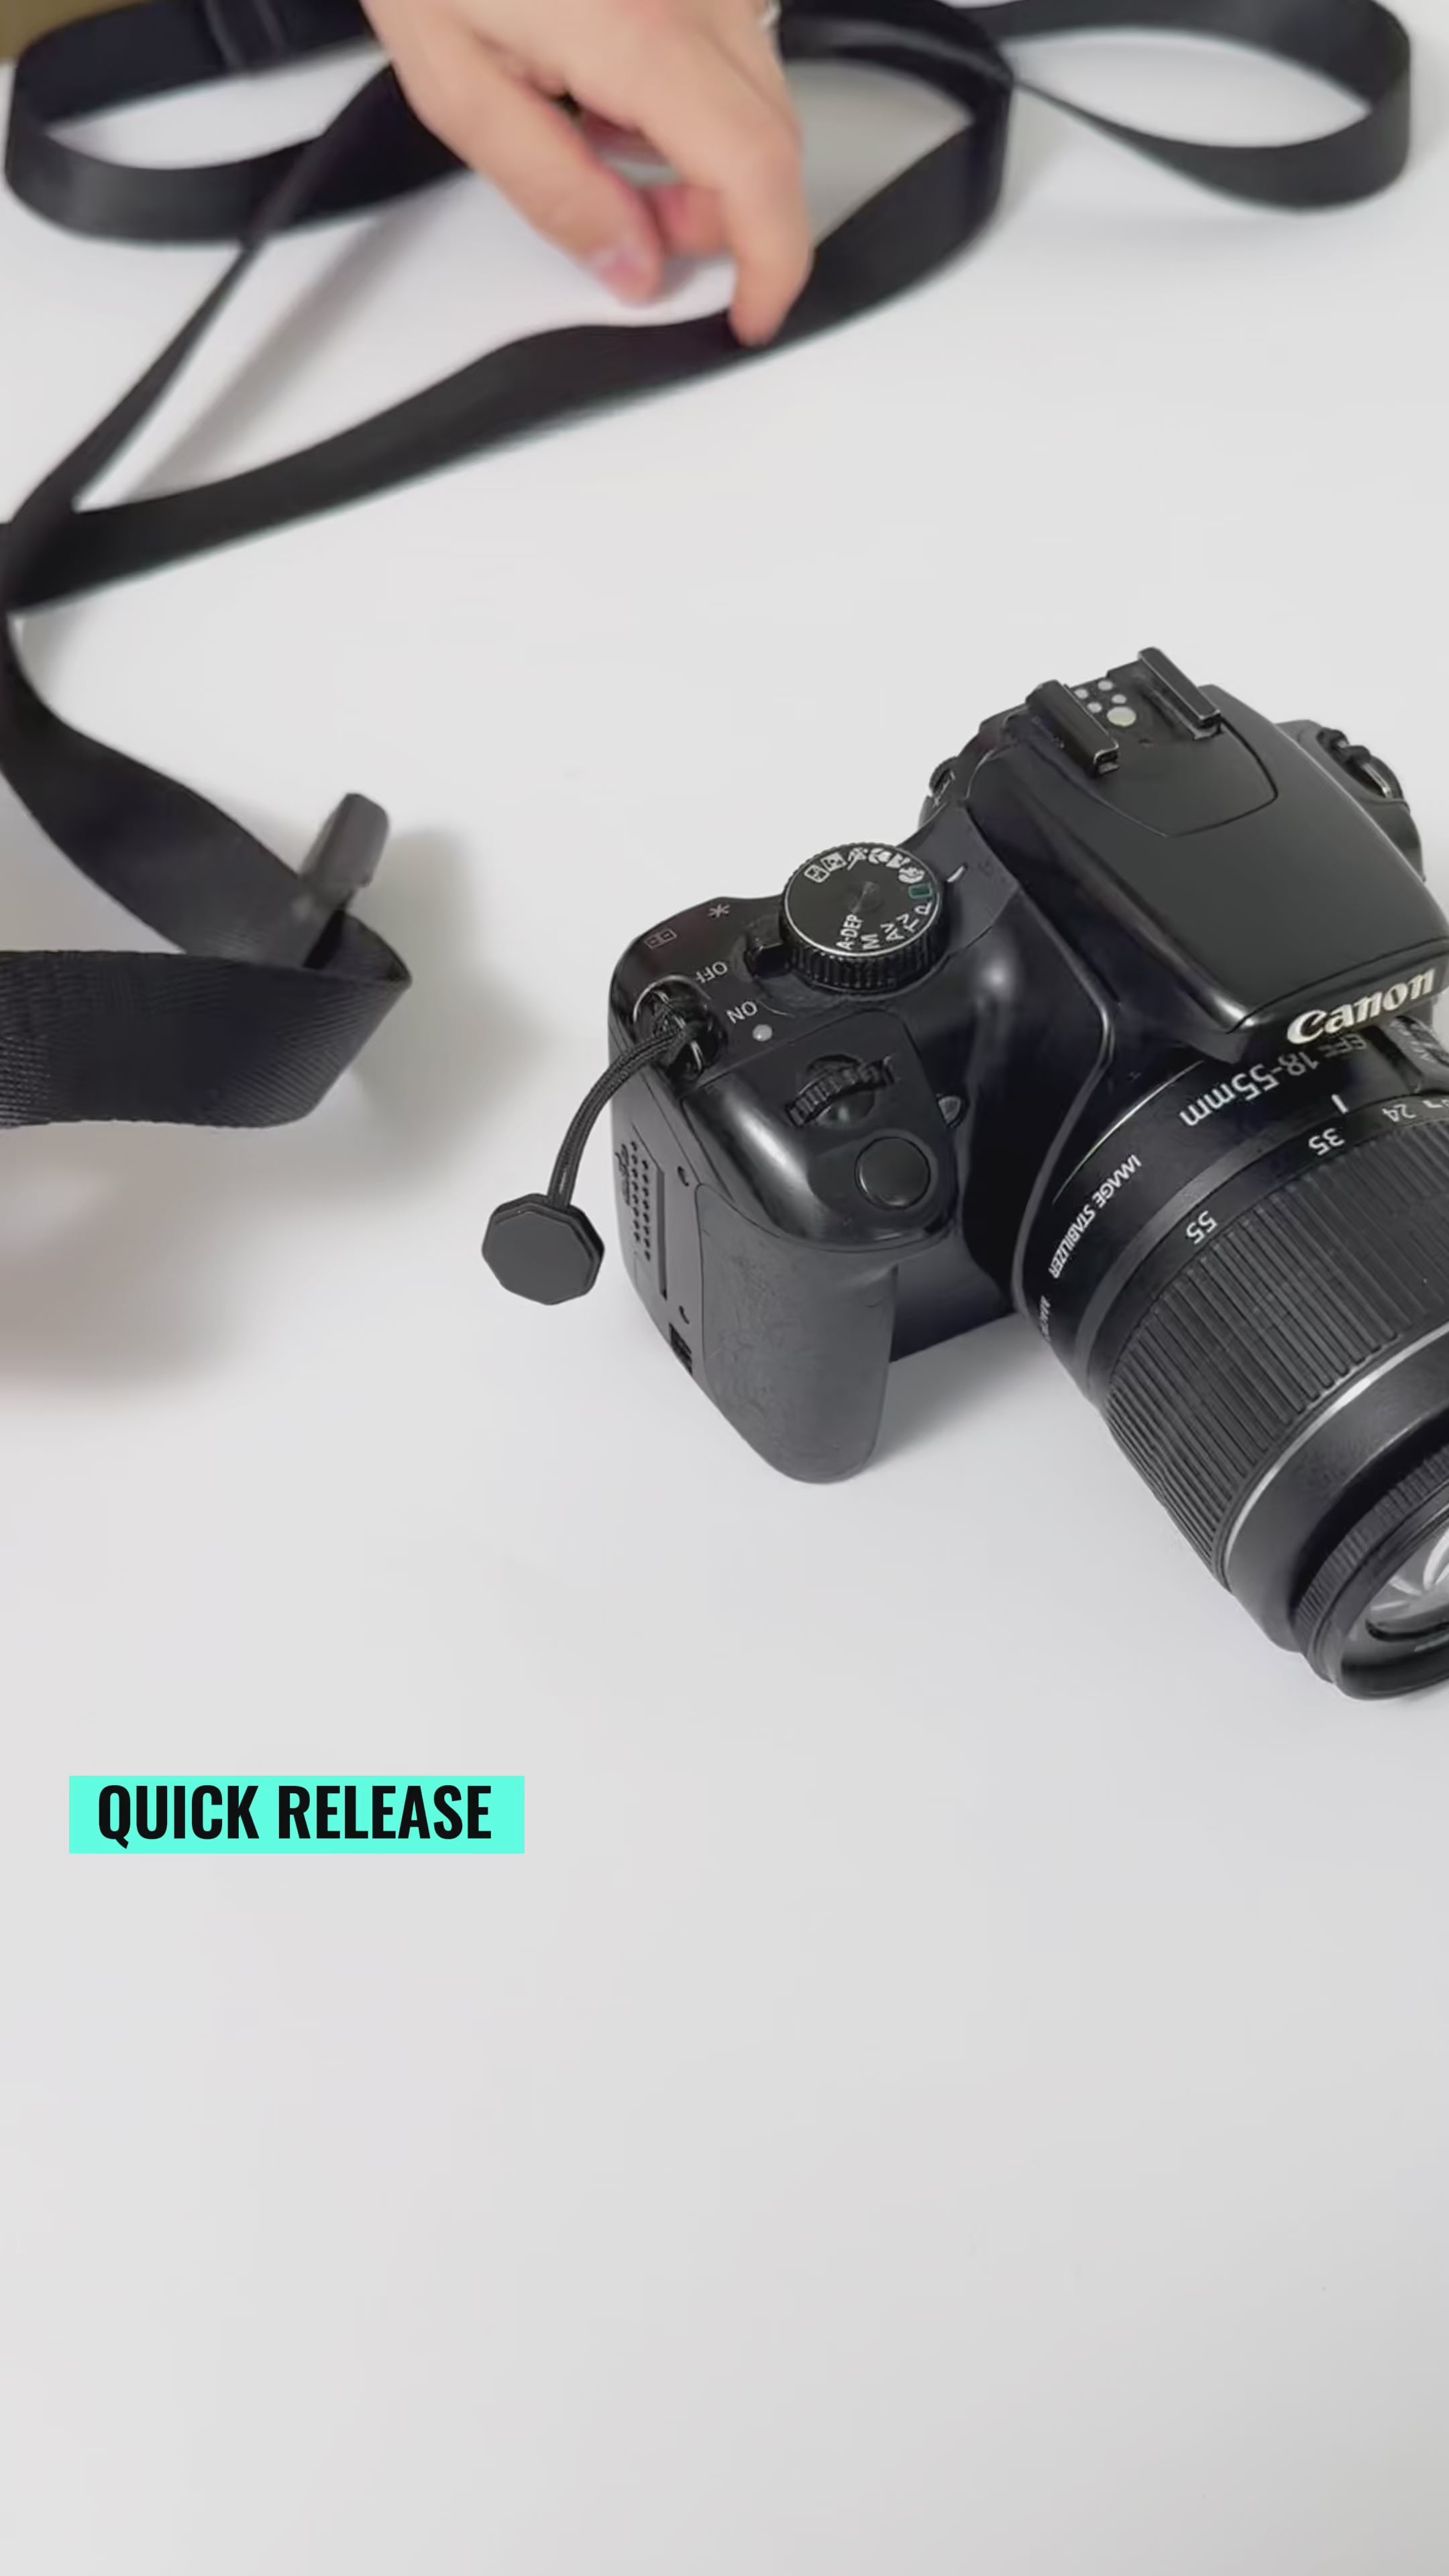 Snelle release -connector voor camera en verrekijker